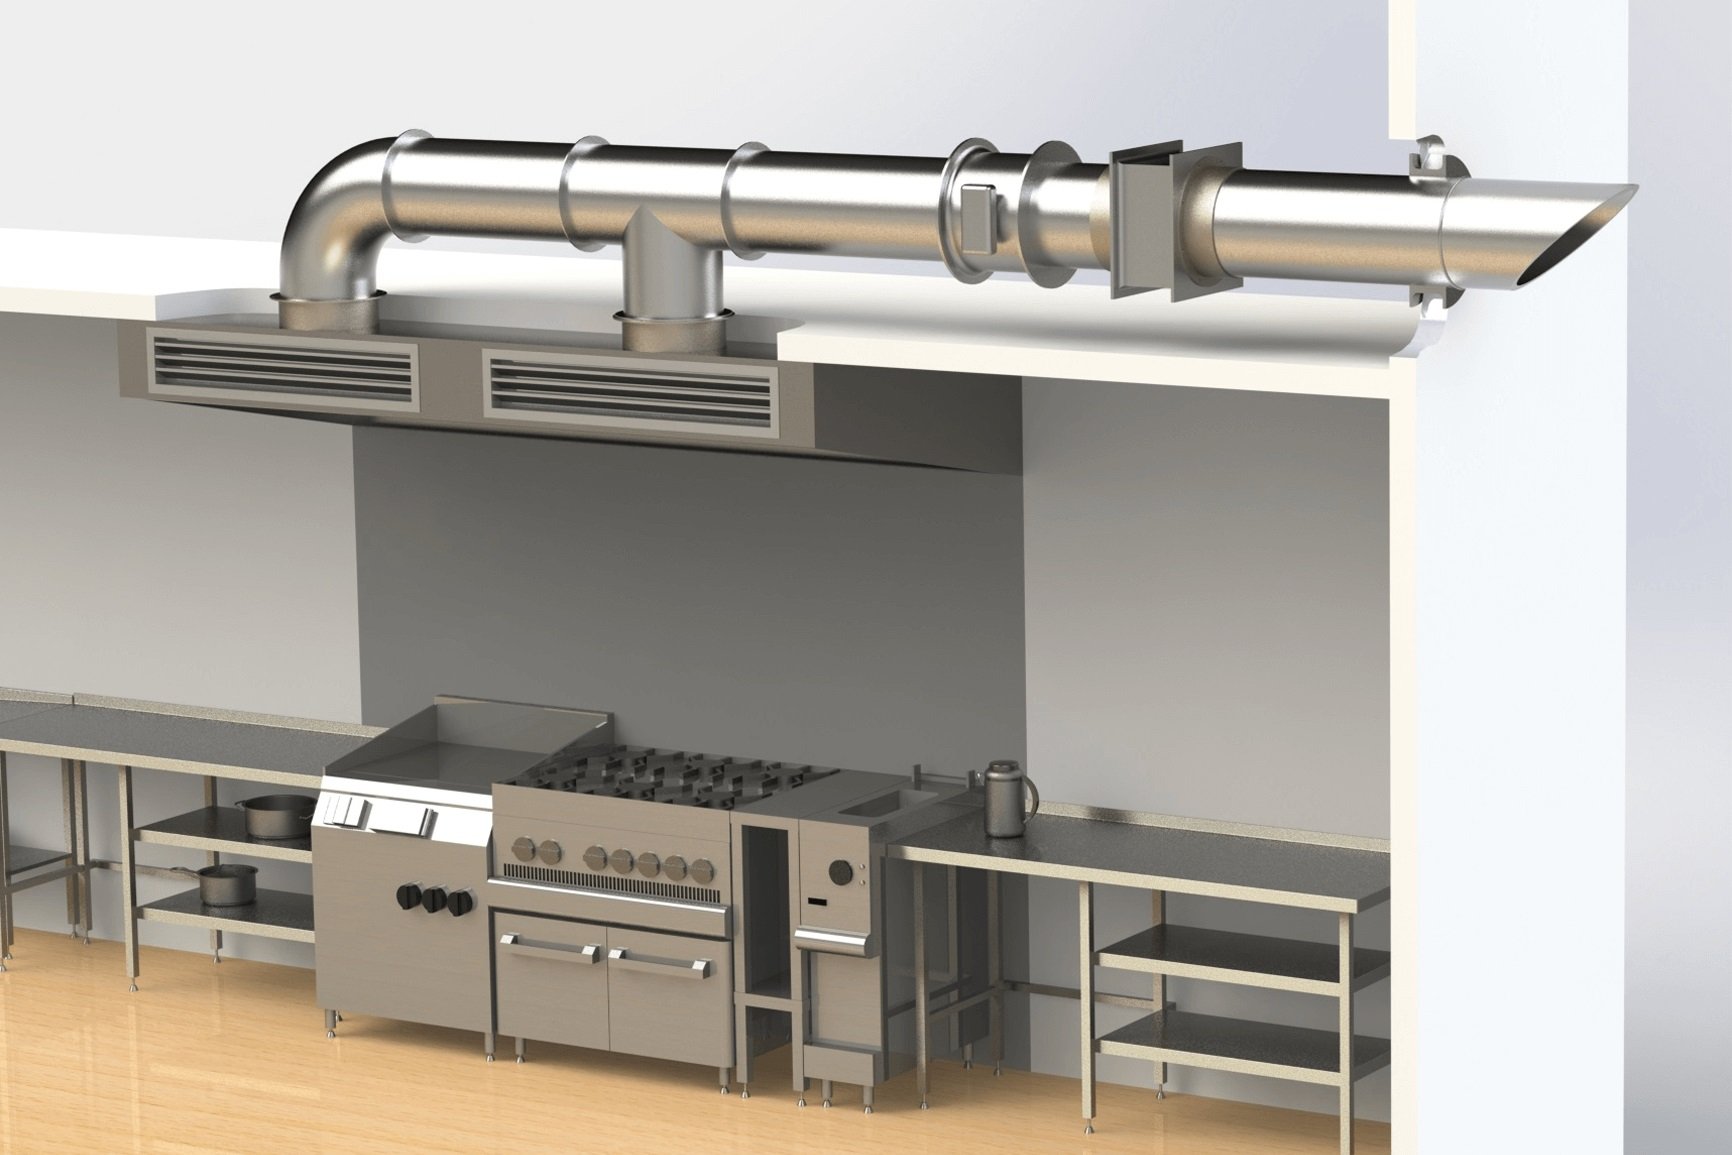 Вентиляция для кухонной вытяжки. Система вентиляции для вытяжки. Вытяжная вентиляция для кухни. Приточно-вытяжная вентиляция на кухне. Приточная вентиляция на кухне.